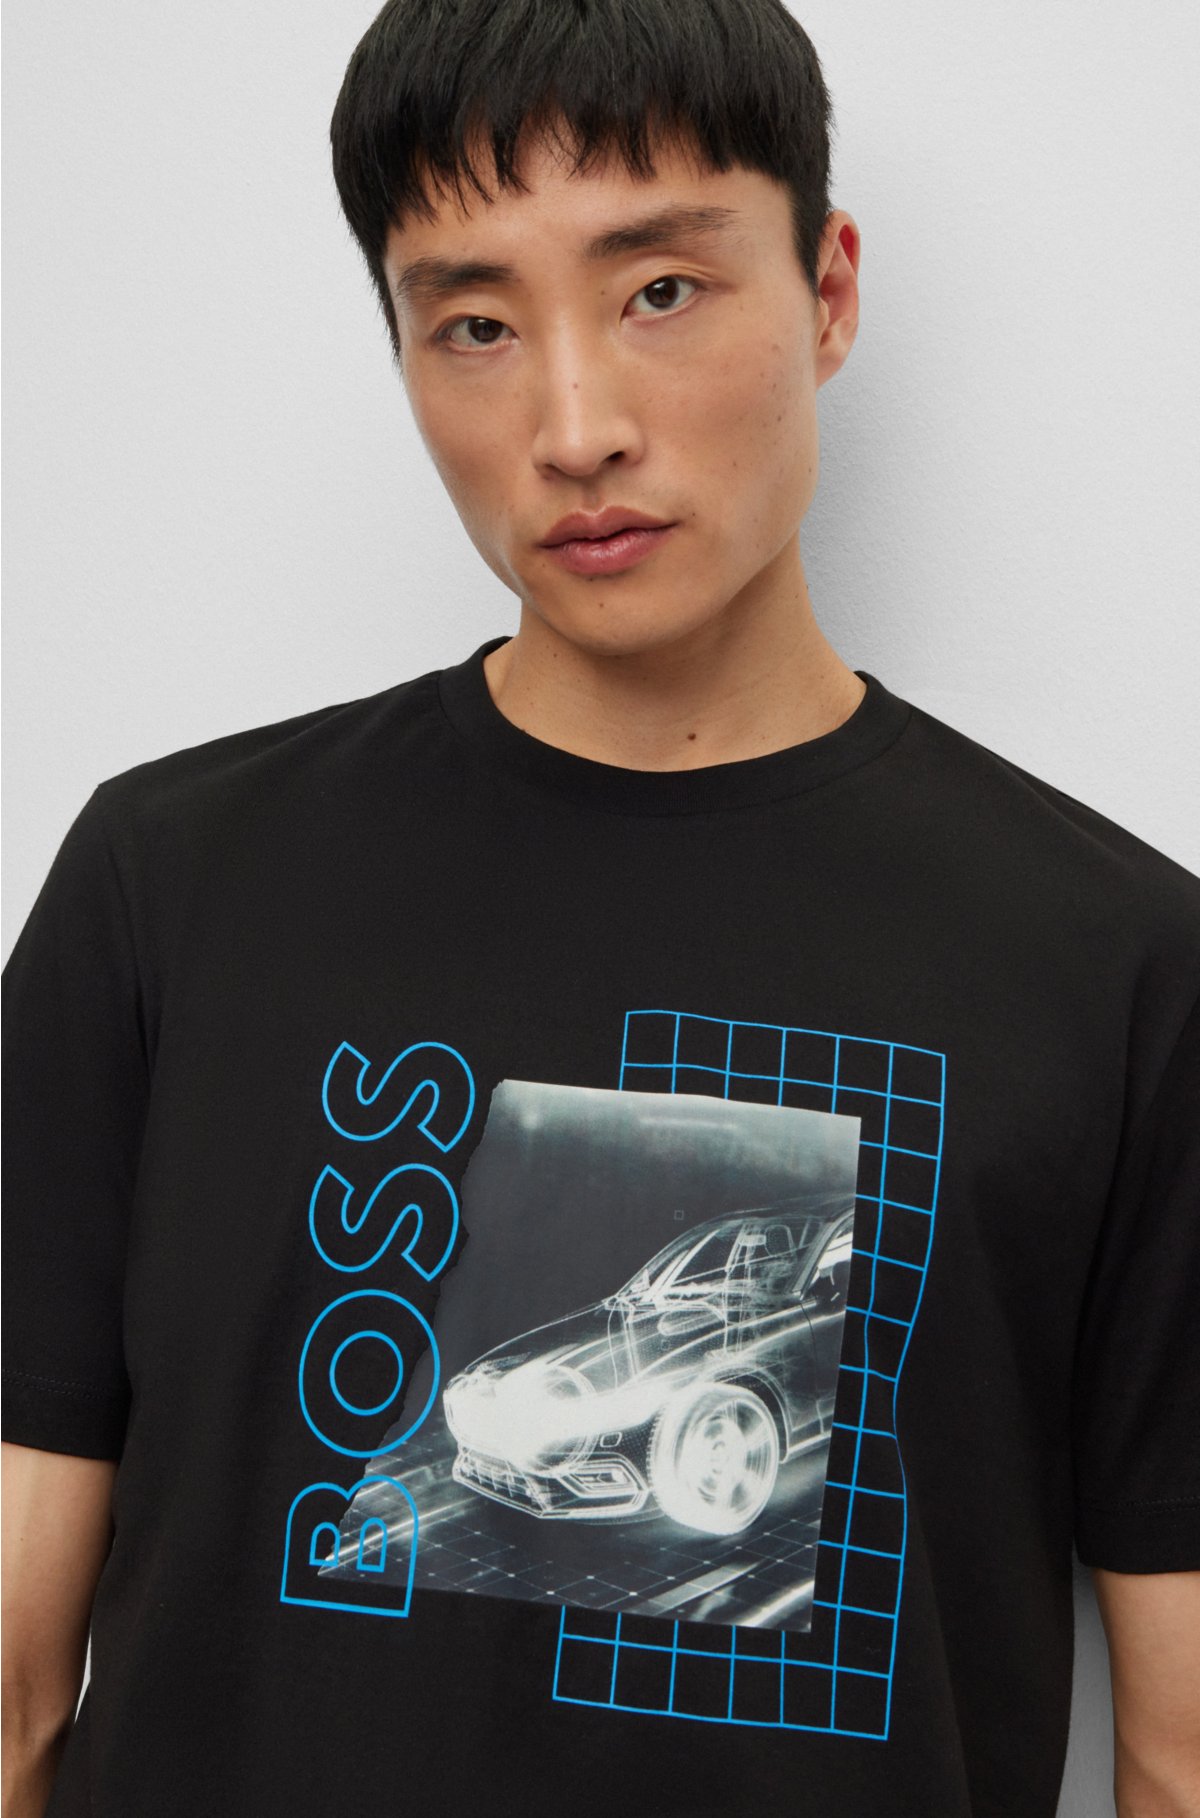 Hugo Boss Shirt Sale Amazon Purchase |